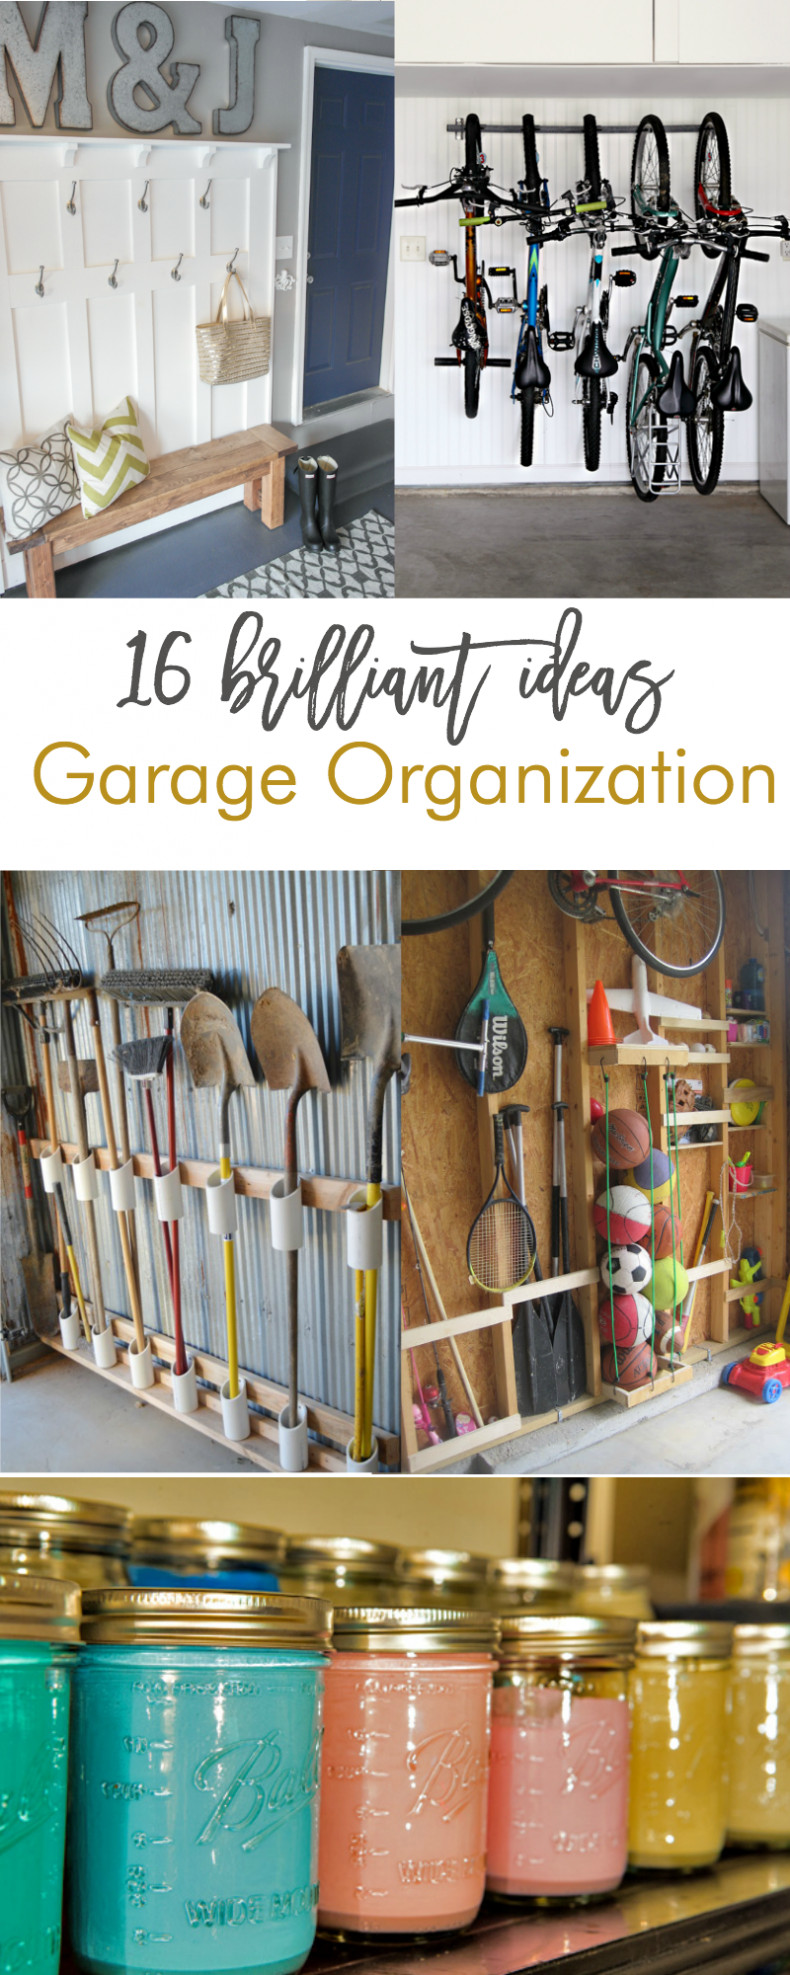 Best ideas about Garage Organization DIY
. Save or Pin 16 Brilliant DIY Garage Organization Ideas Now.